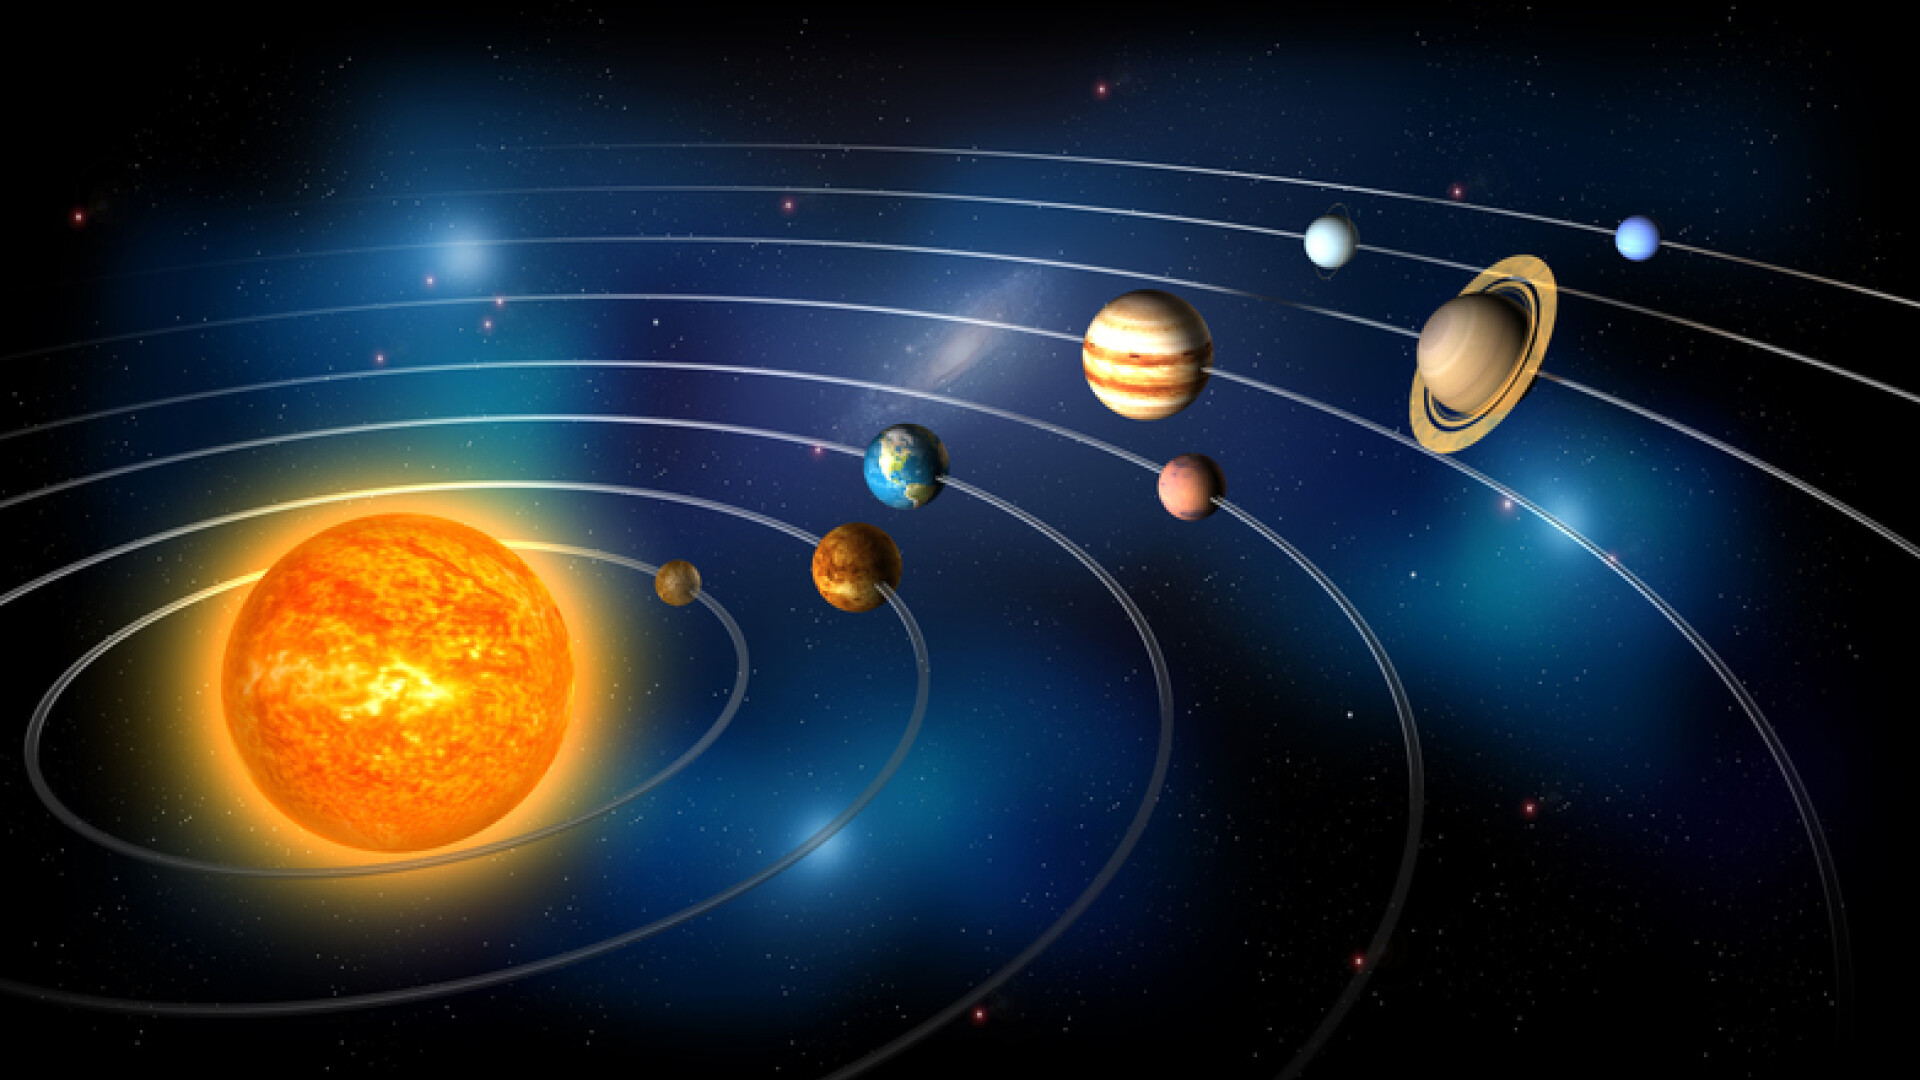 sistemul solar